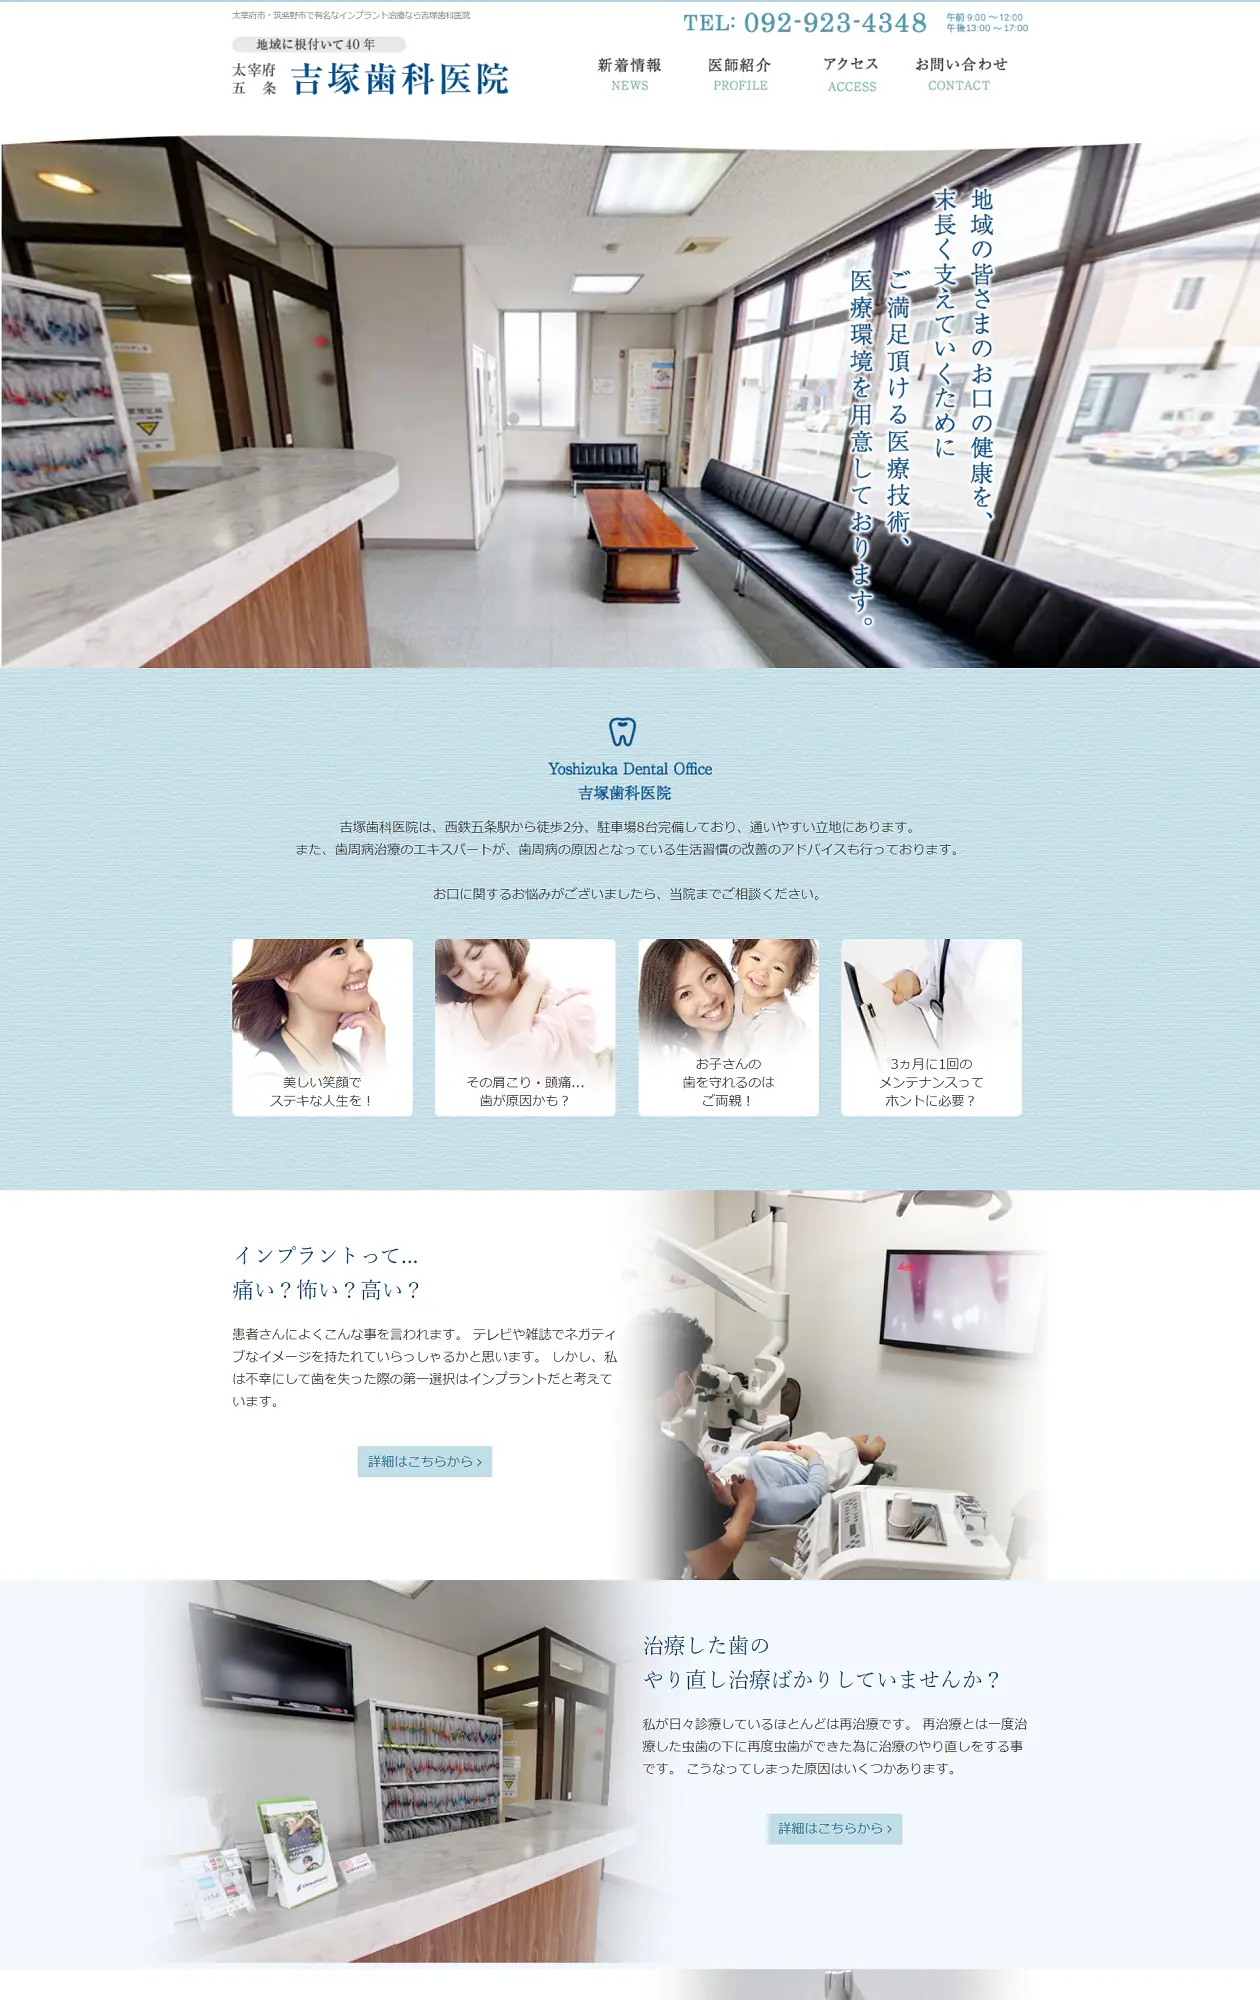 吉塚歯科医院 ホームページ